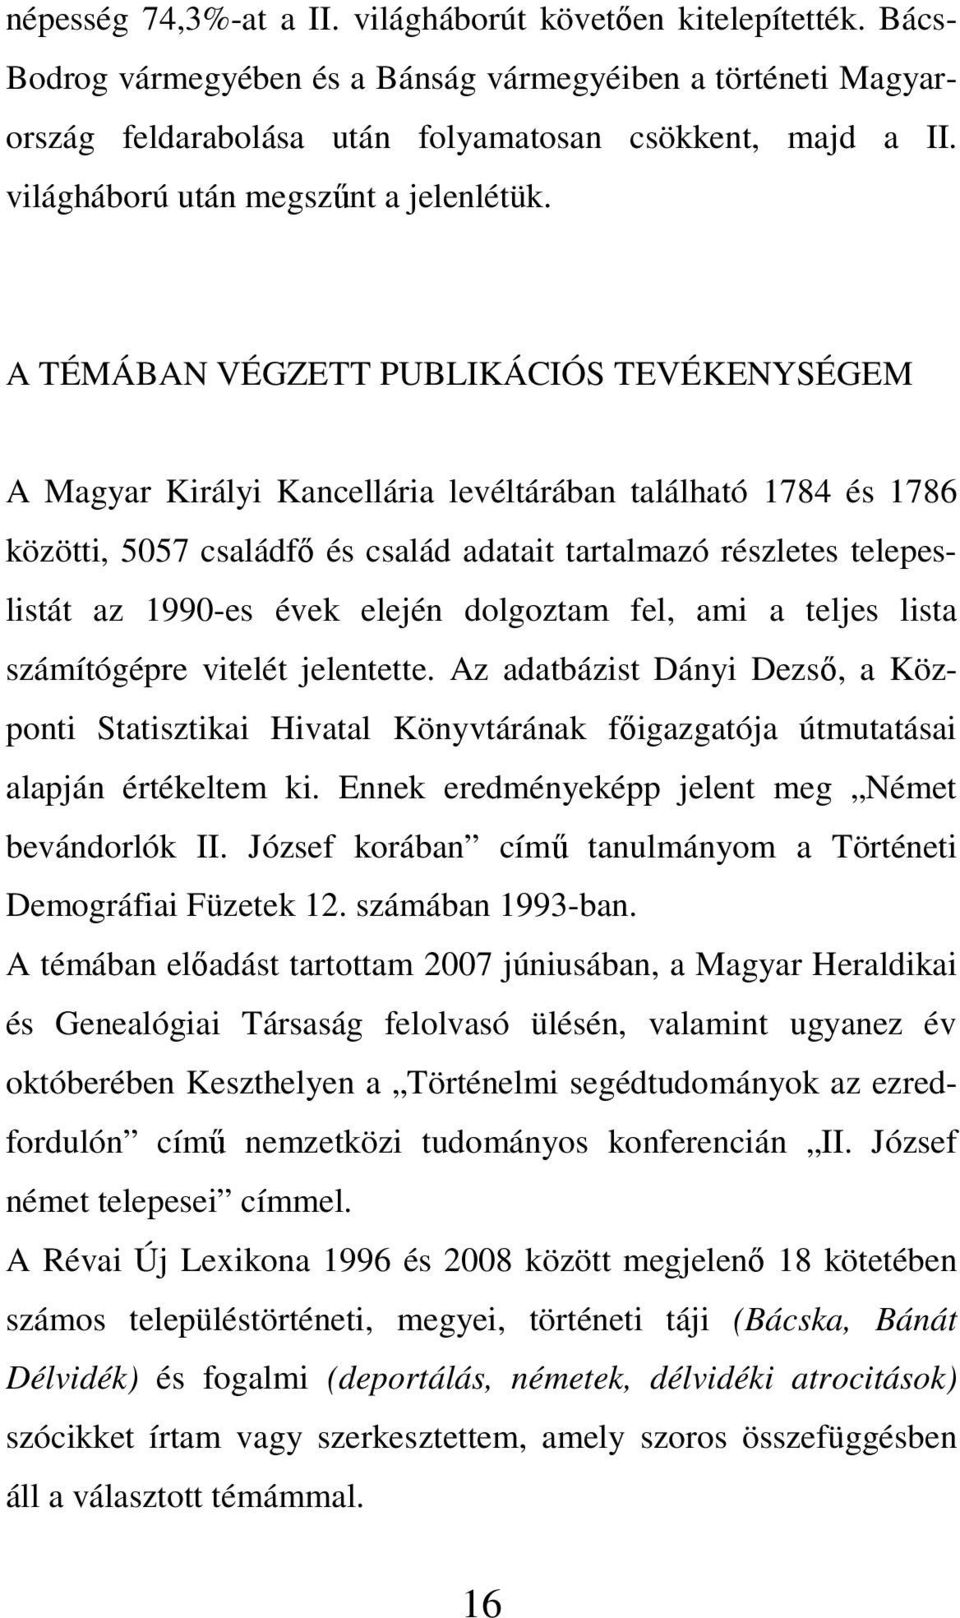 A TÉMÁBAN VÉGZETT PUBLIKÁCIÓS TEVÉKENYSÉGEM A Magyar Királyi Kancellária levéltárában található 1784 és 1786 közötti, 5057 családfő és család adatait tartalmazó részletes telepeslistát az 1990-es